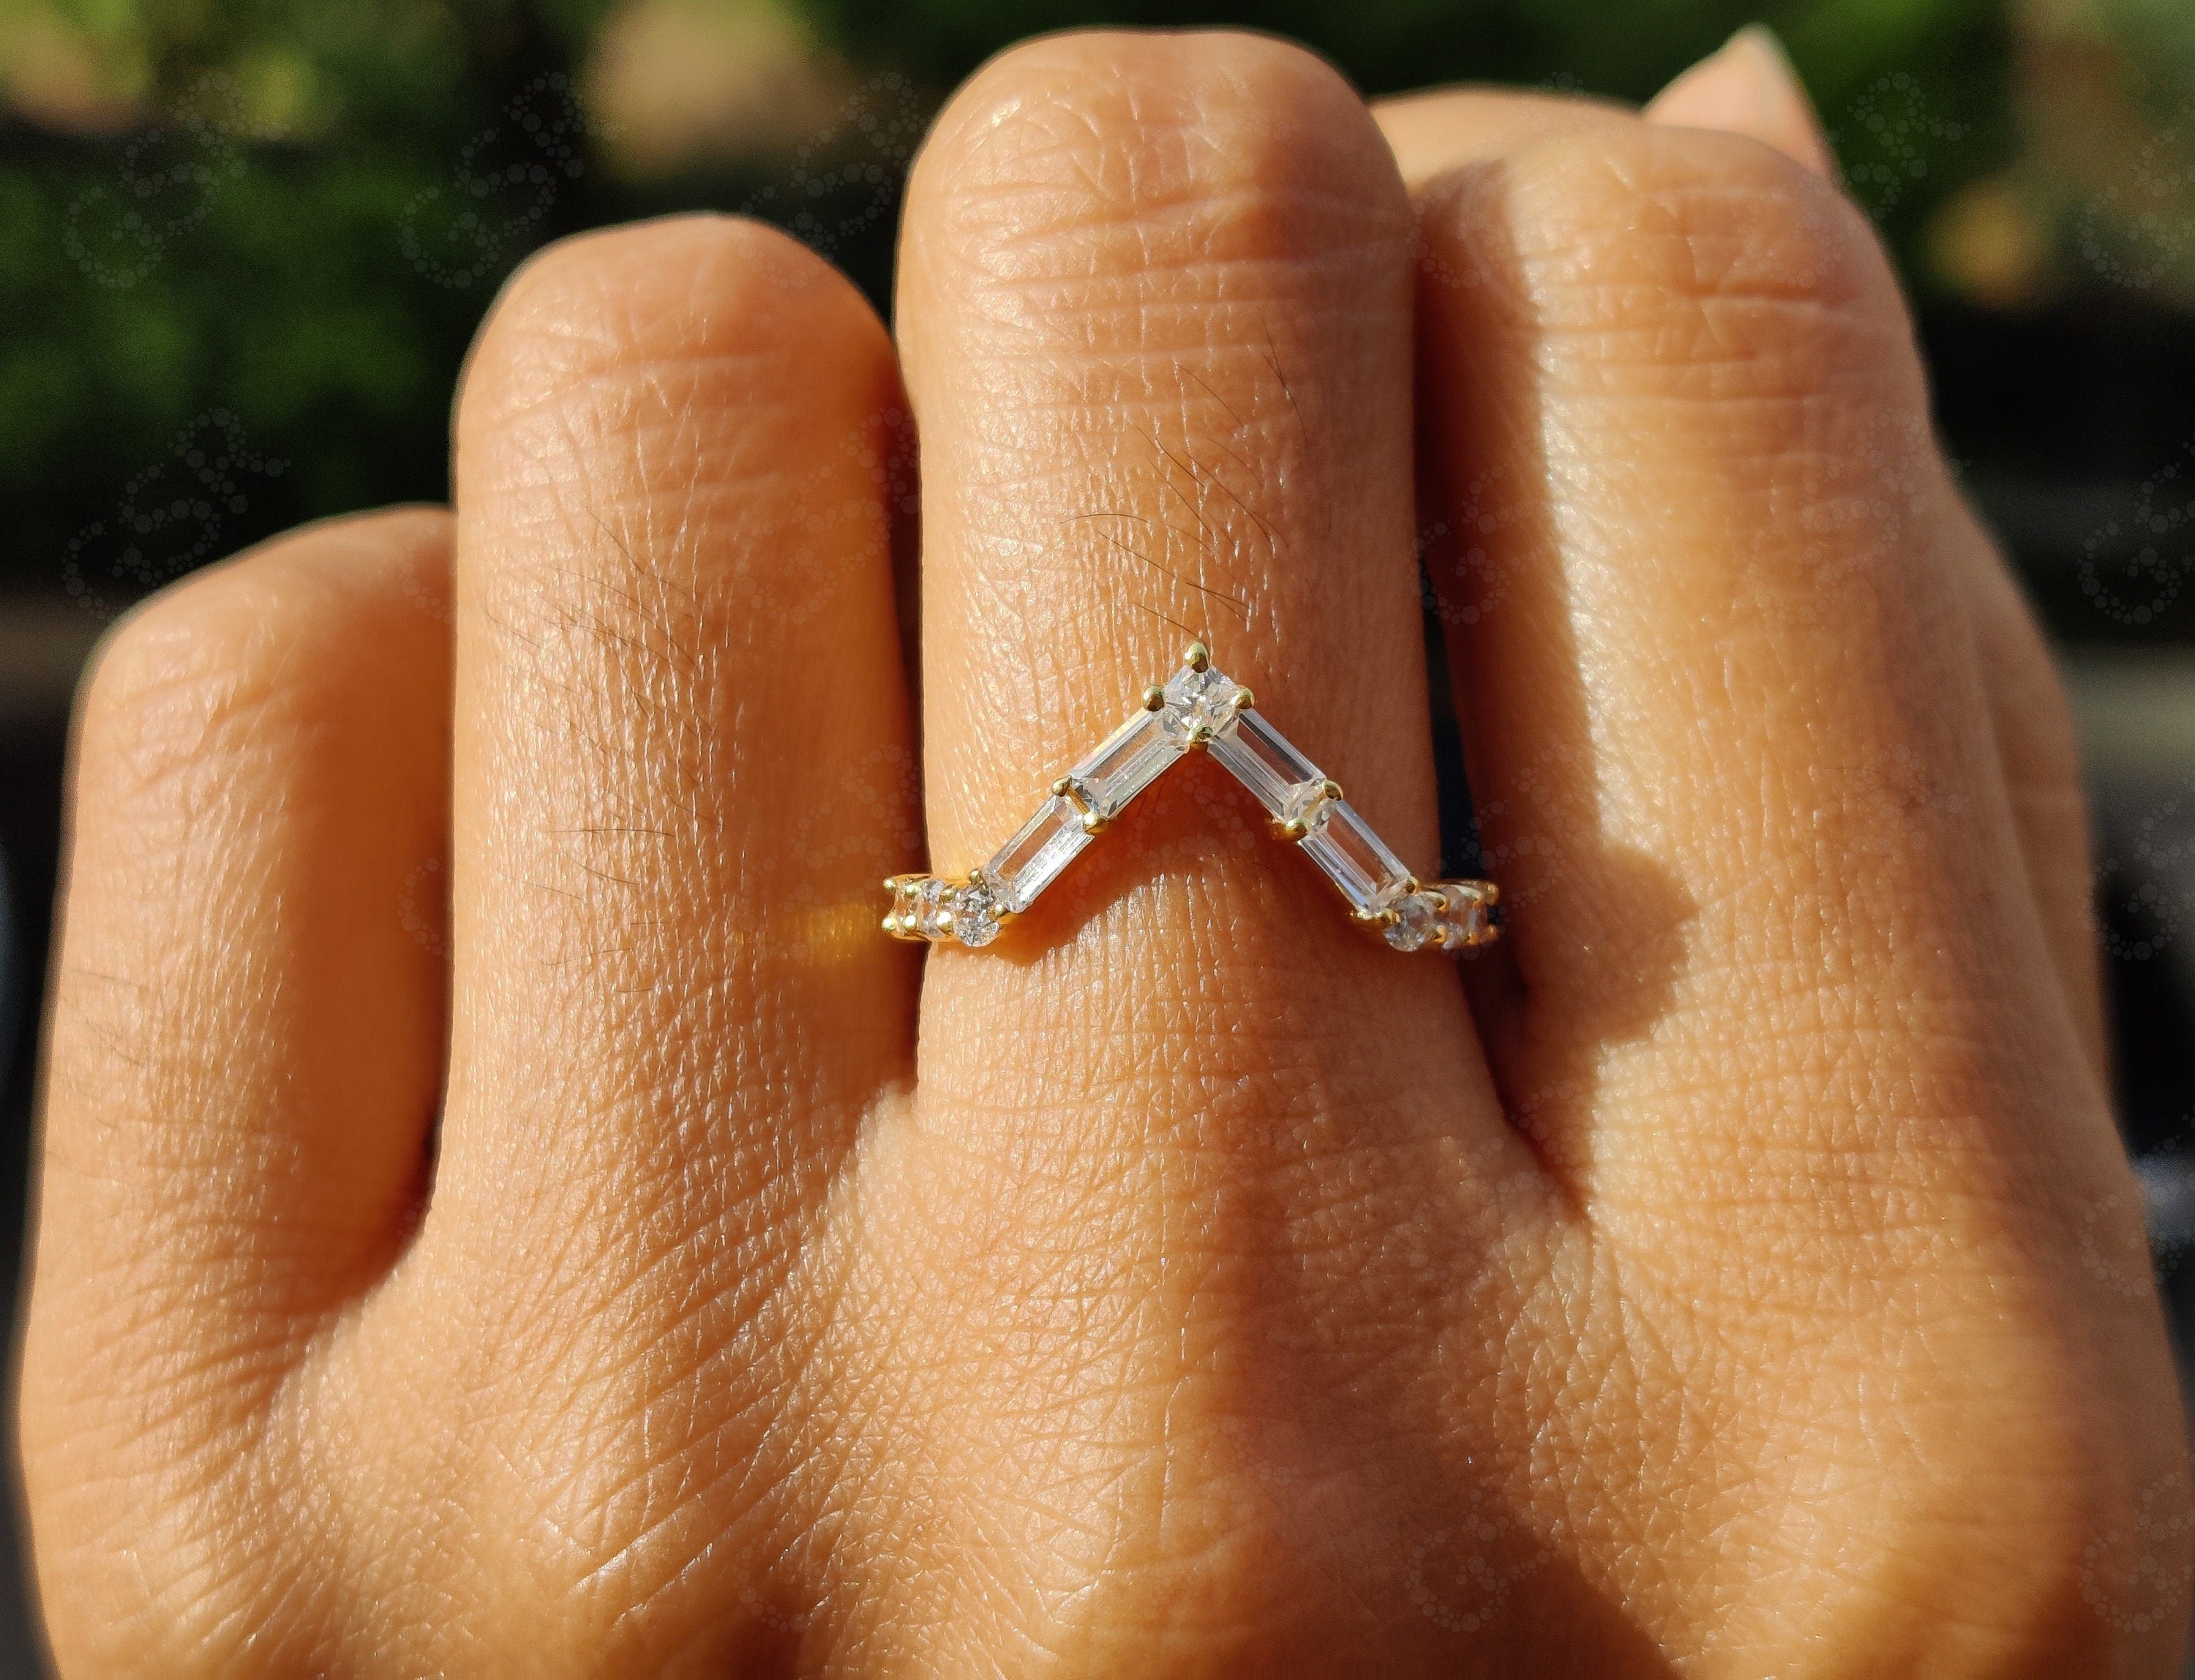 Elegant Gold Chevron Ring - V Shape Moissanite Wedding Band Beauty - Baguette Geometric Stacking Ring - Dainty Anniversary Gift Ring